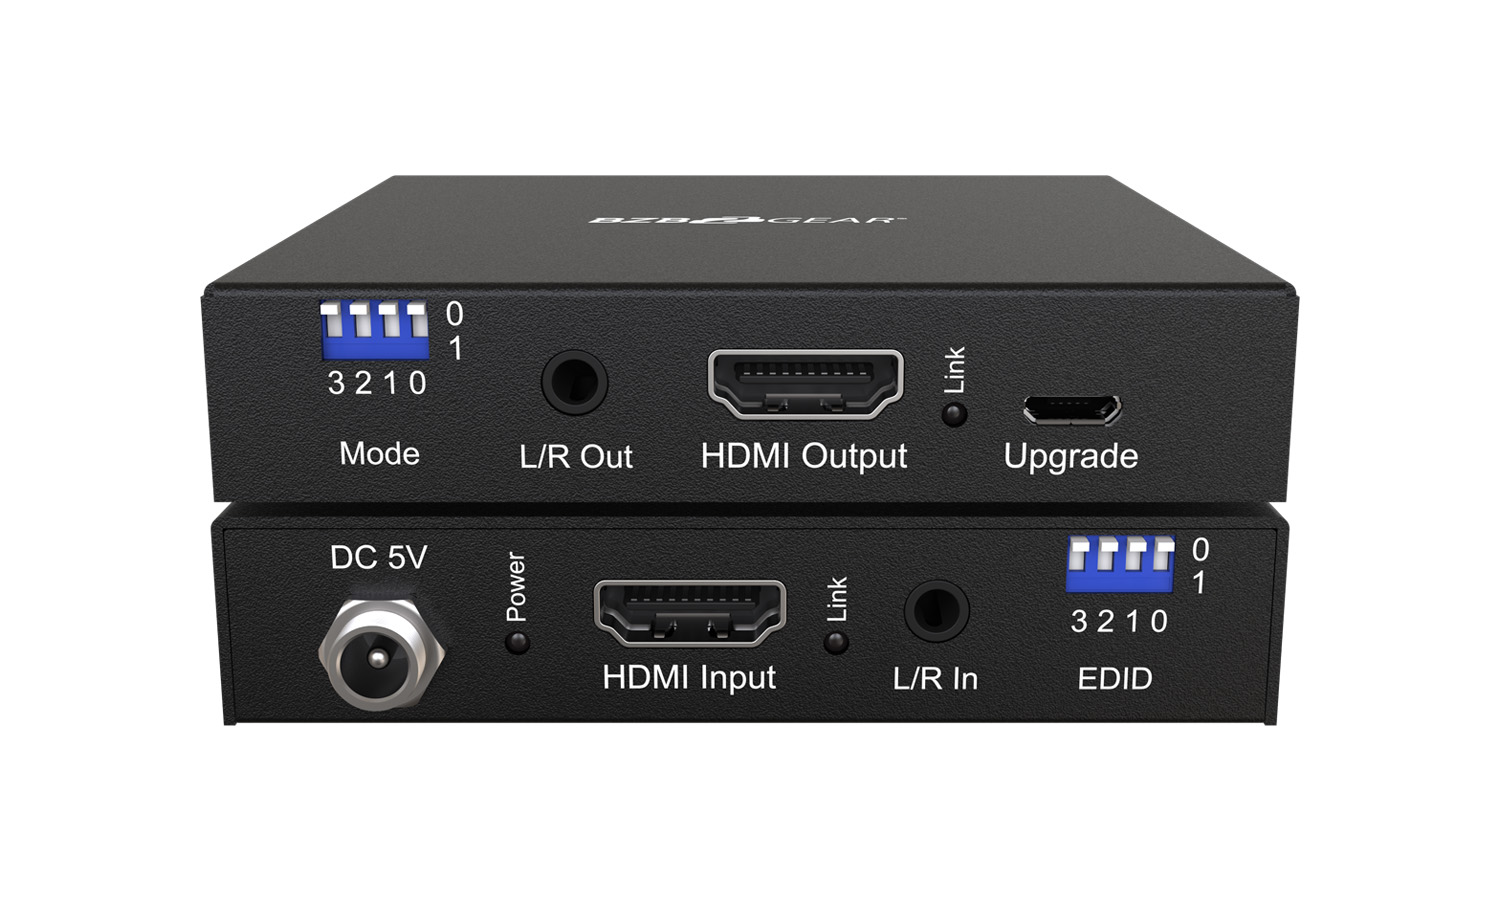 BG-AEE 4K UHD HDMI Signal Fixer and Audio Embedder/De-embedder by BZBGEAR